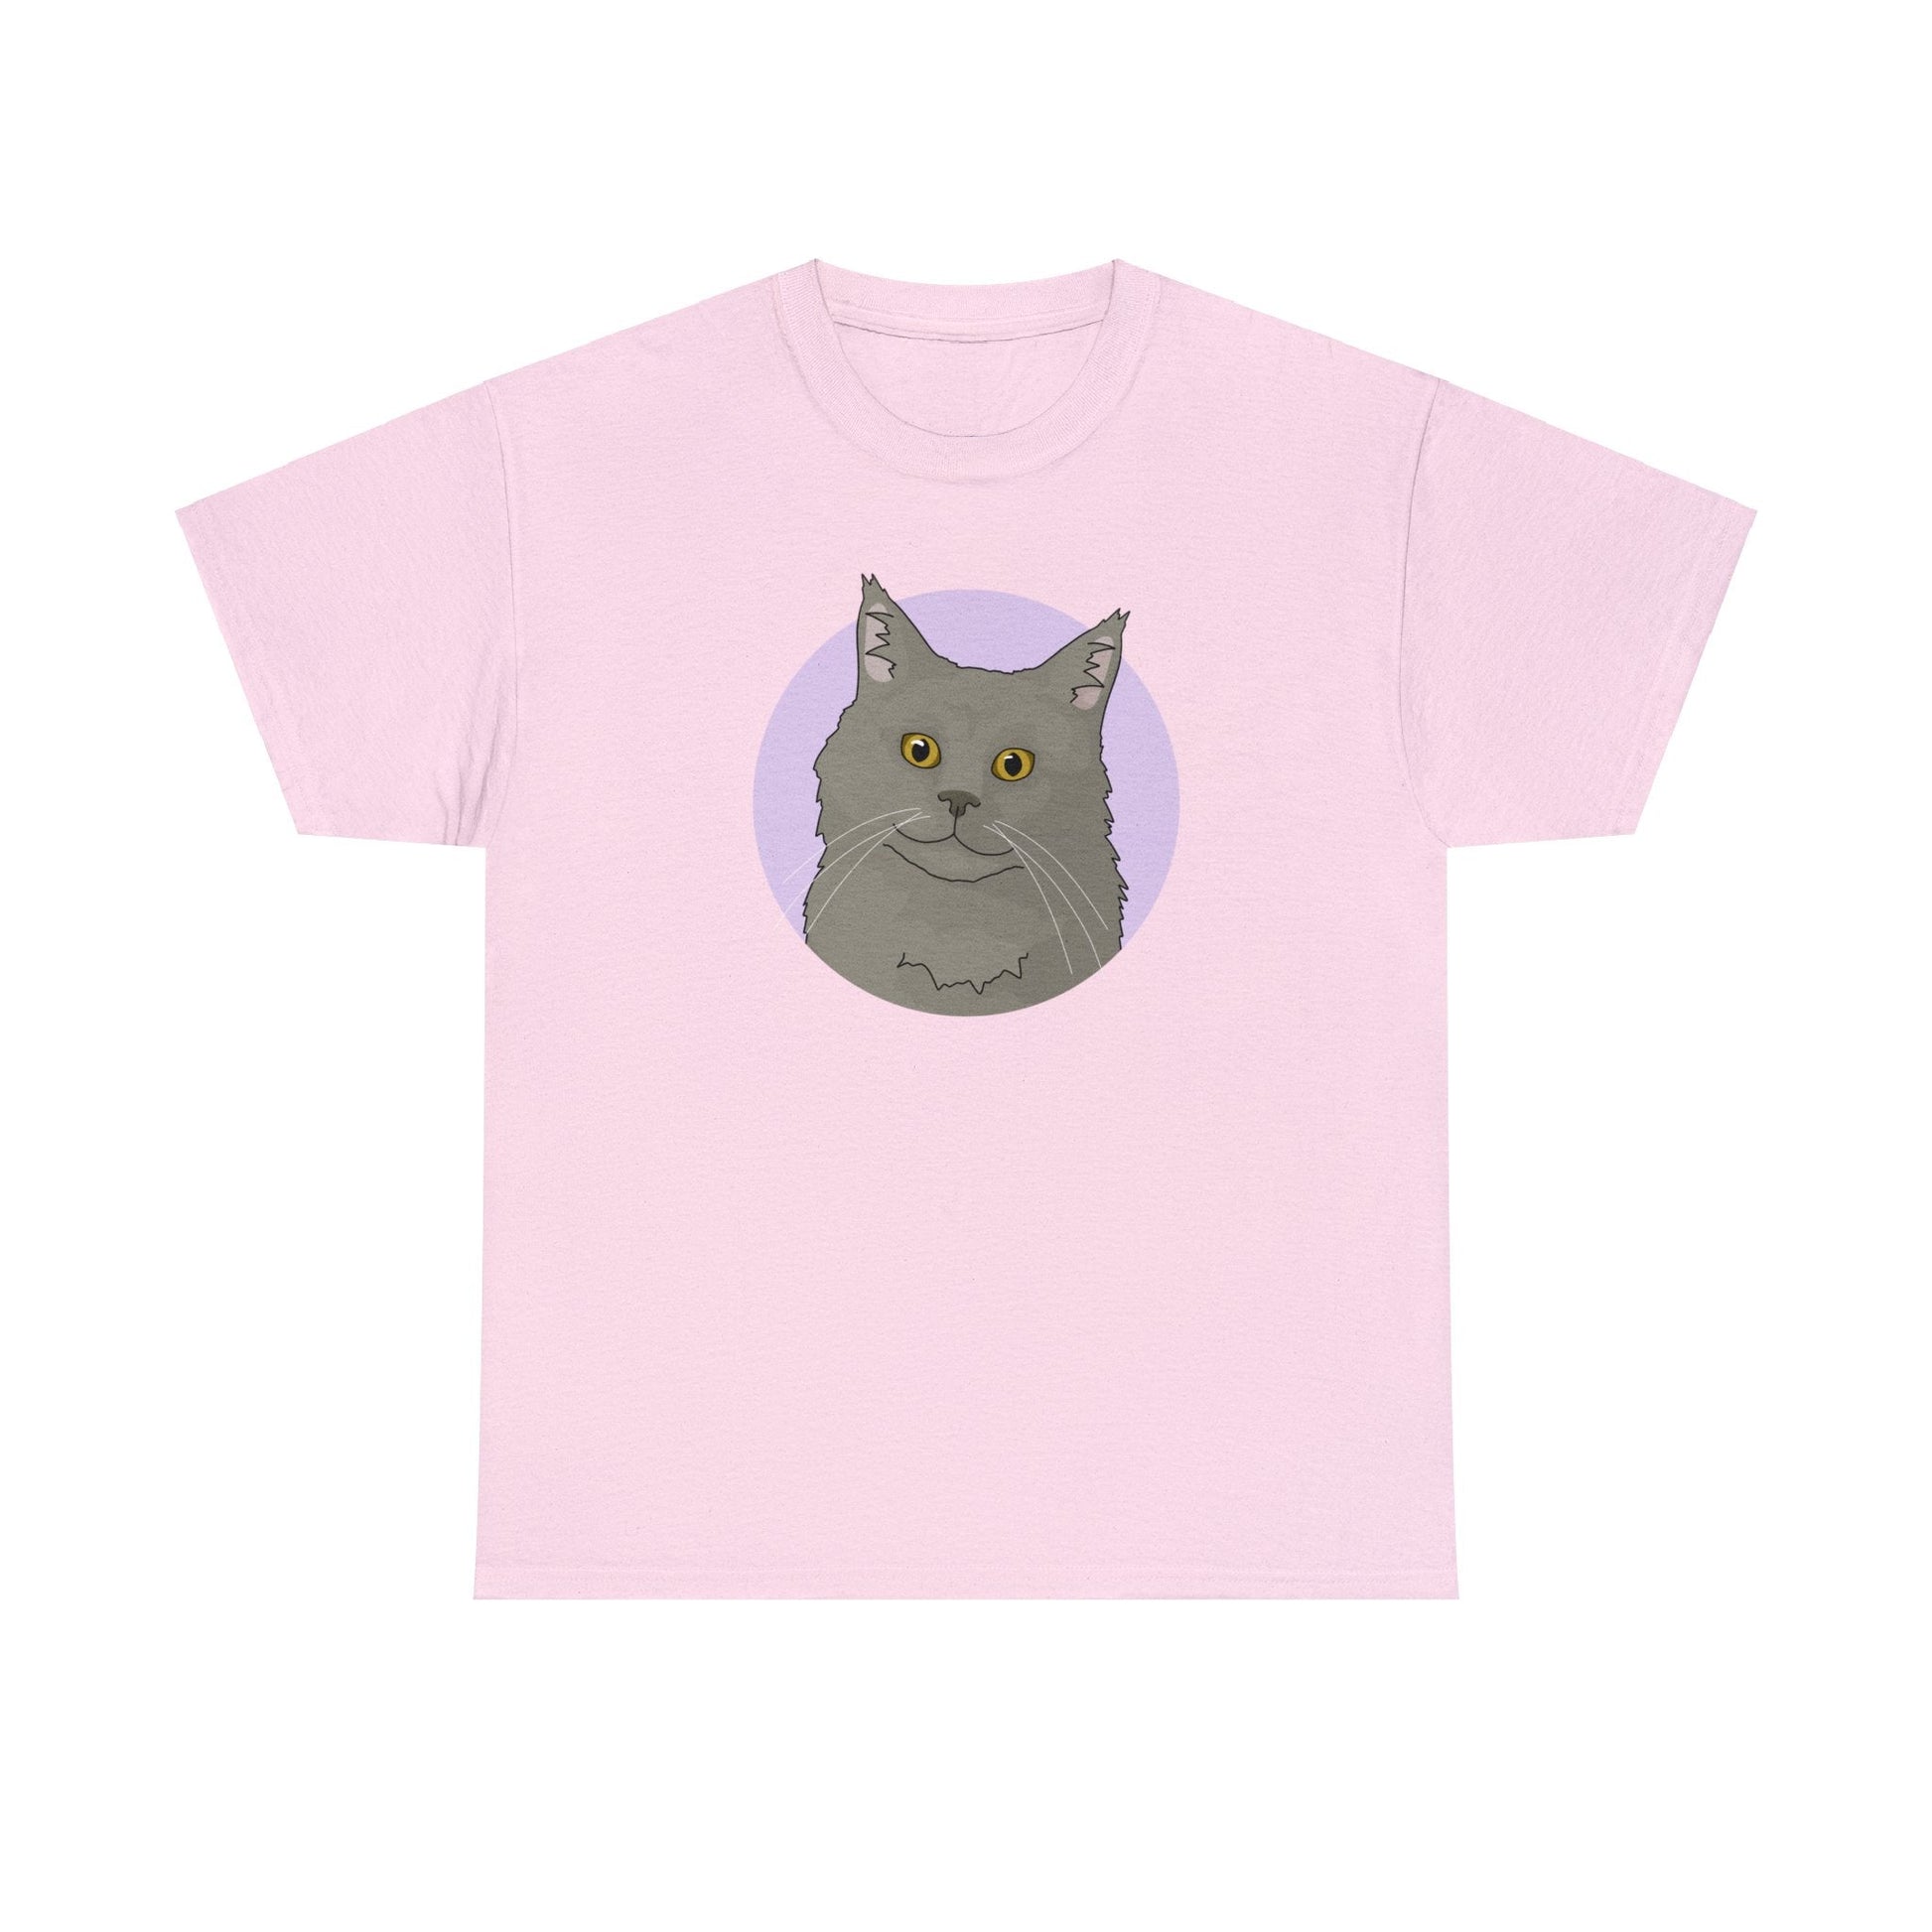 Maine Coon | T-shirt - Detezi Designs-11860490459550503803